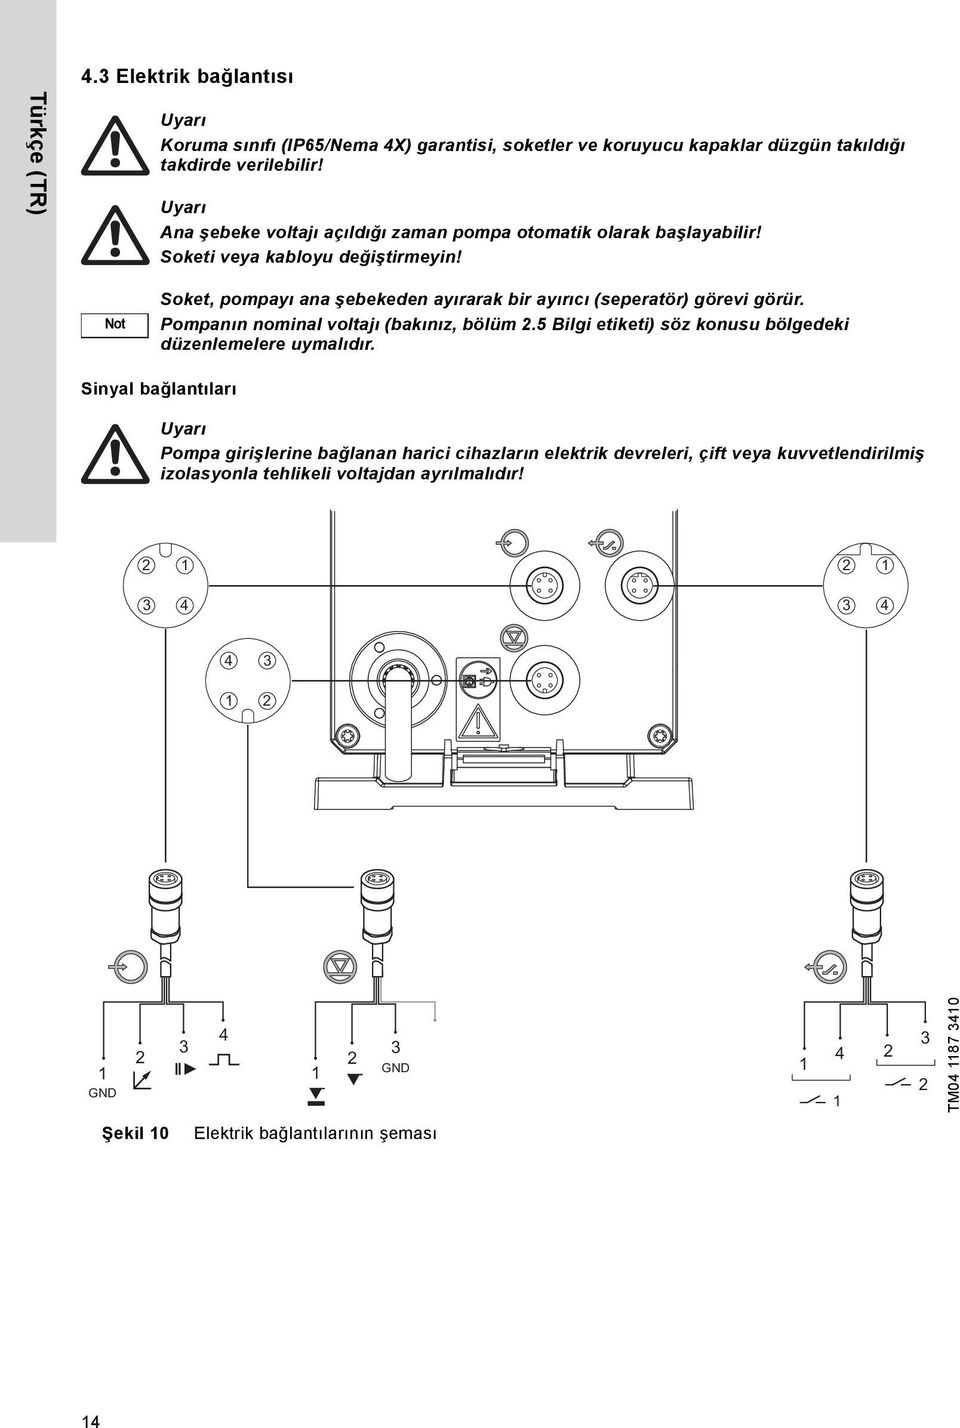 Not Soket, pompayı ana şebekeden ayırarak bir ayırıcı (seperatör) görevi görür. Pompanın nominal voltajı (bakınız, bölüm 2.